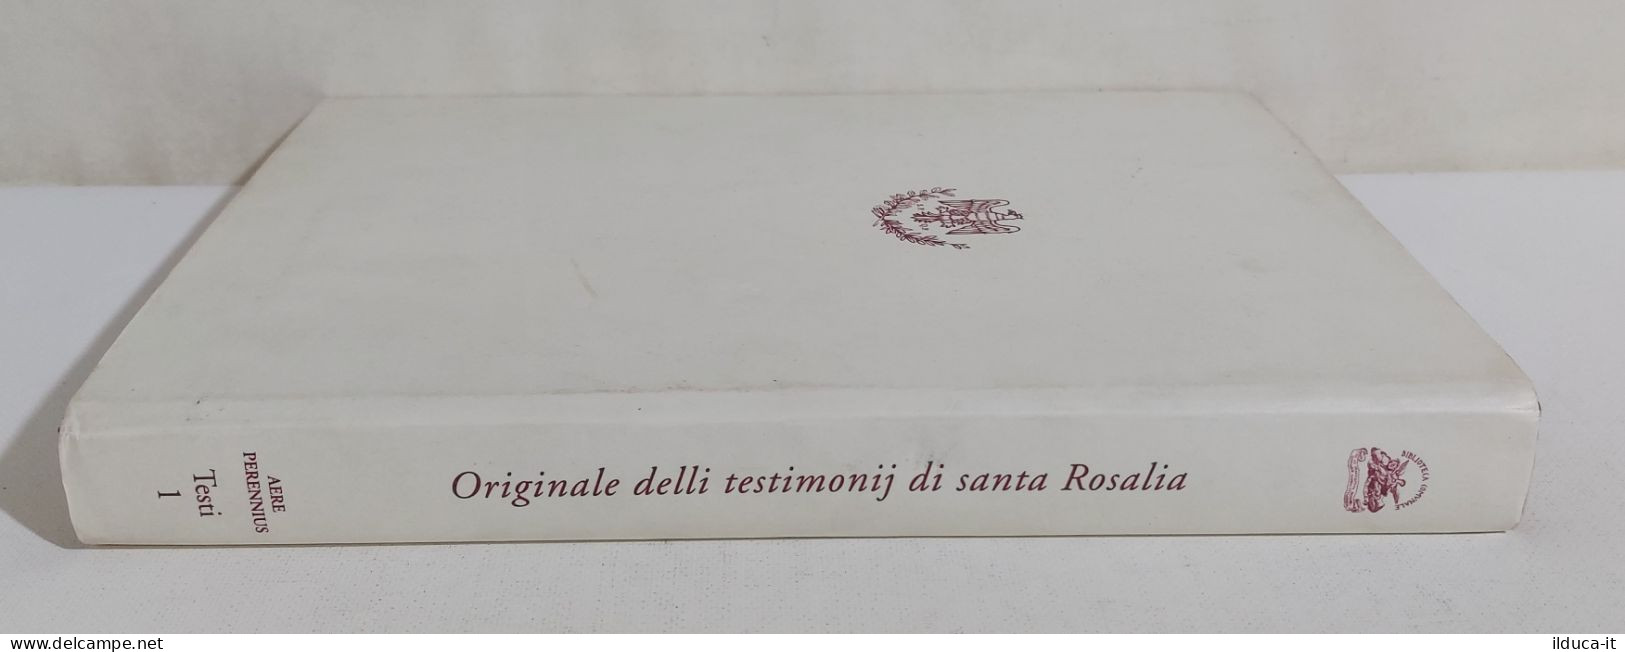 I108936 V Originale Delli Testimonij Di Santa Rosalia - Palermo 1977 - Religion